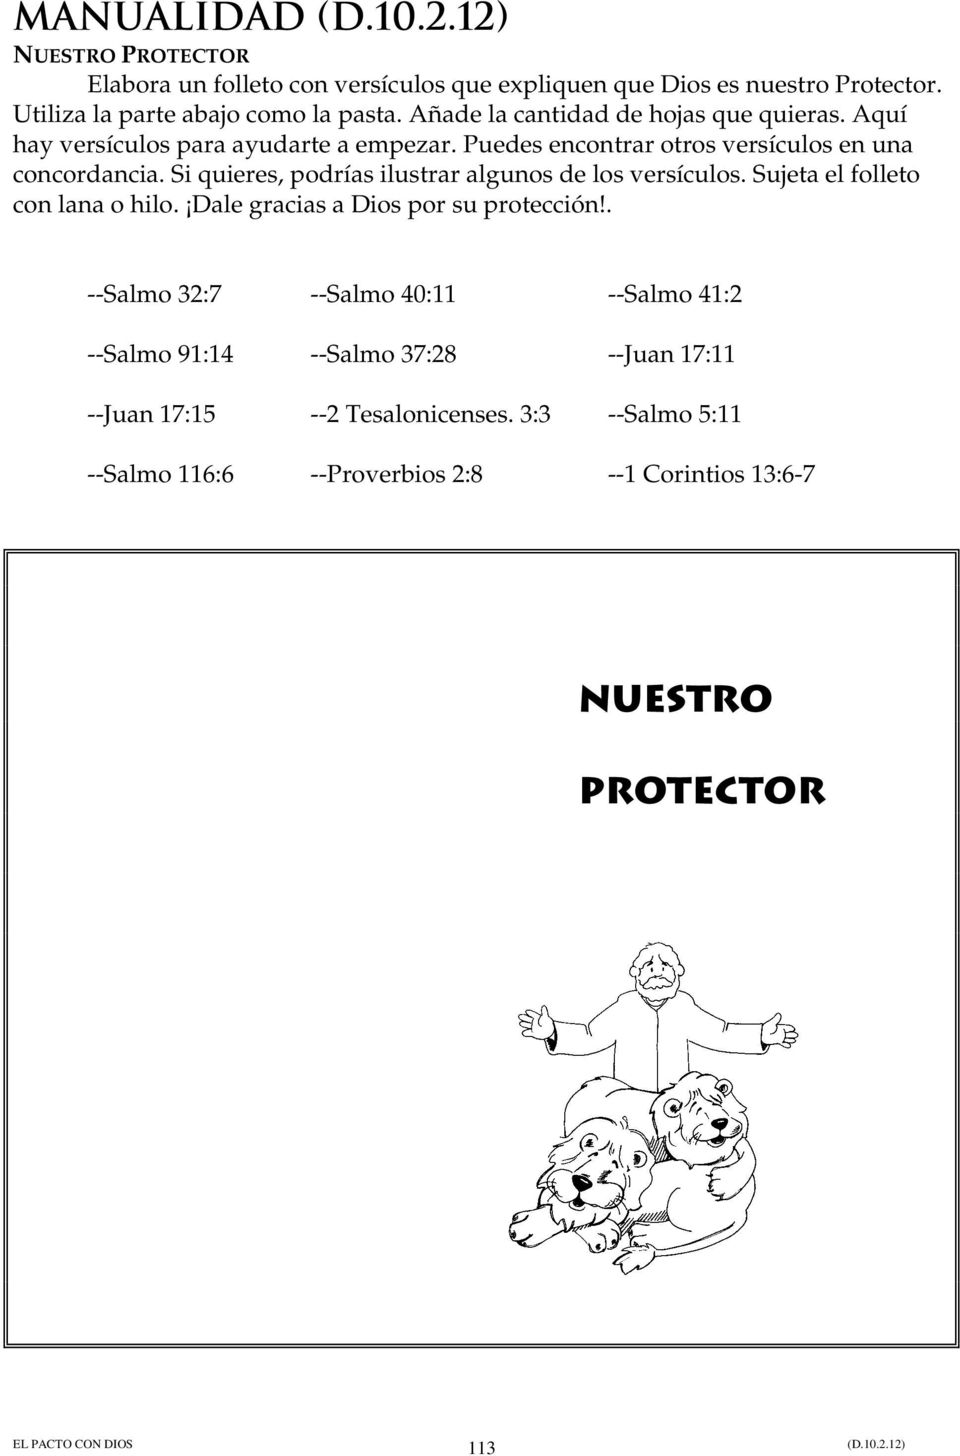 Si quieres, podrías ilustrar algunos de los versículos. Sujeta el folleto con lana o hilo. Dale gracias a Dios por su protección!